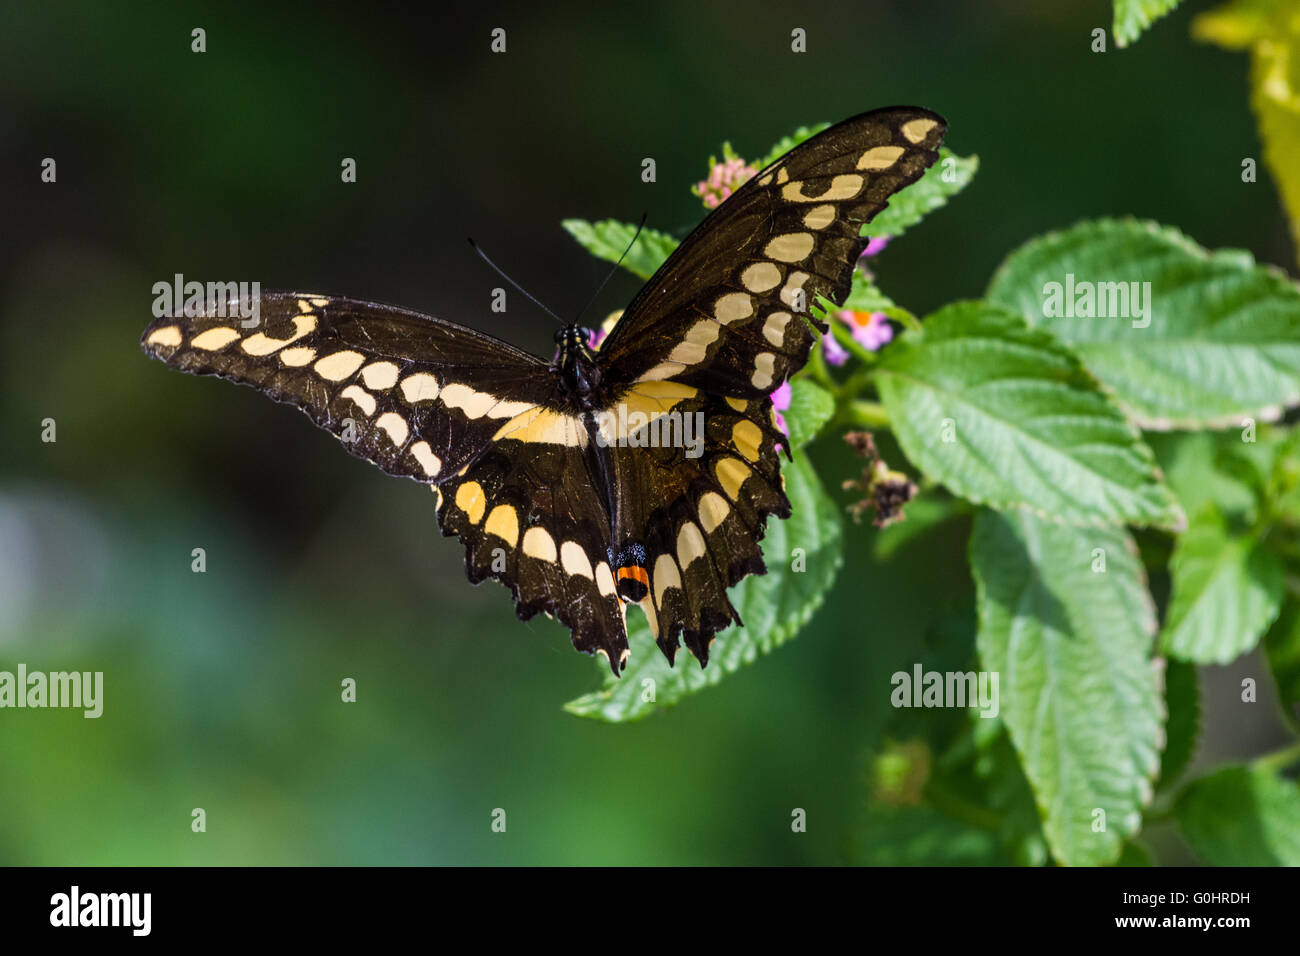 Un grand porte-queue (Papilio cresphontes) papillon danse autour de fleurs sauvages. Île haute, Texas, USA. Banque D'Images